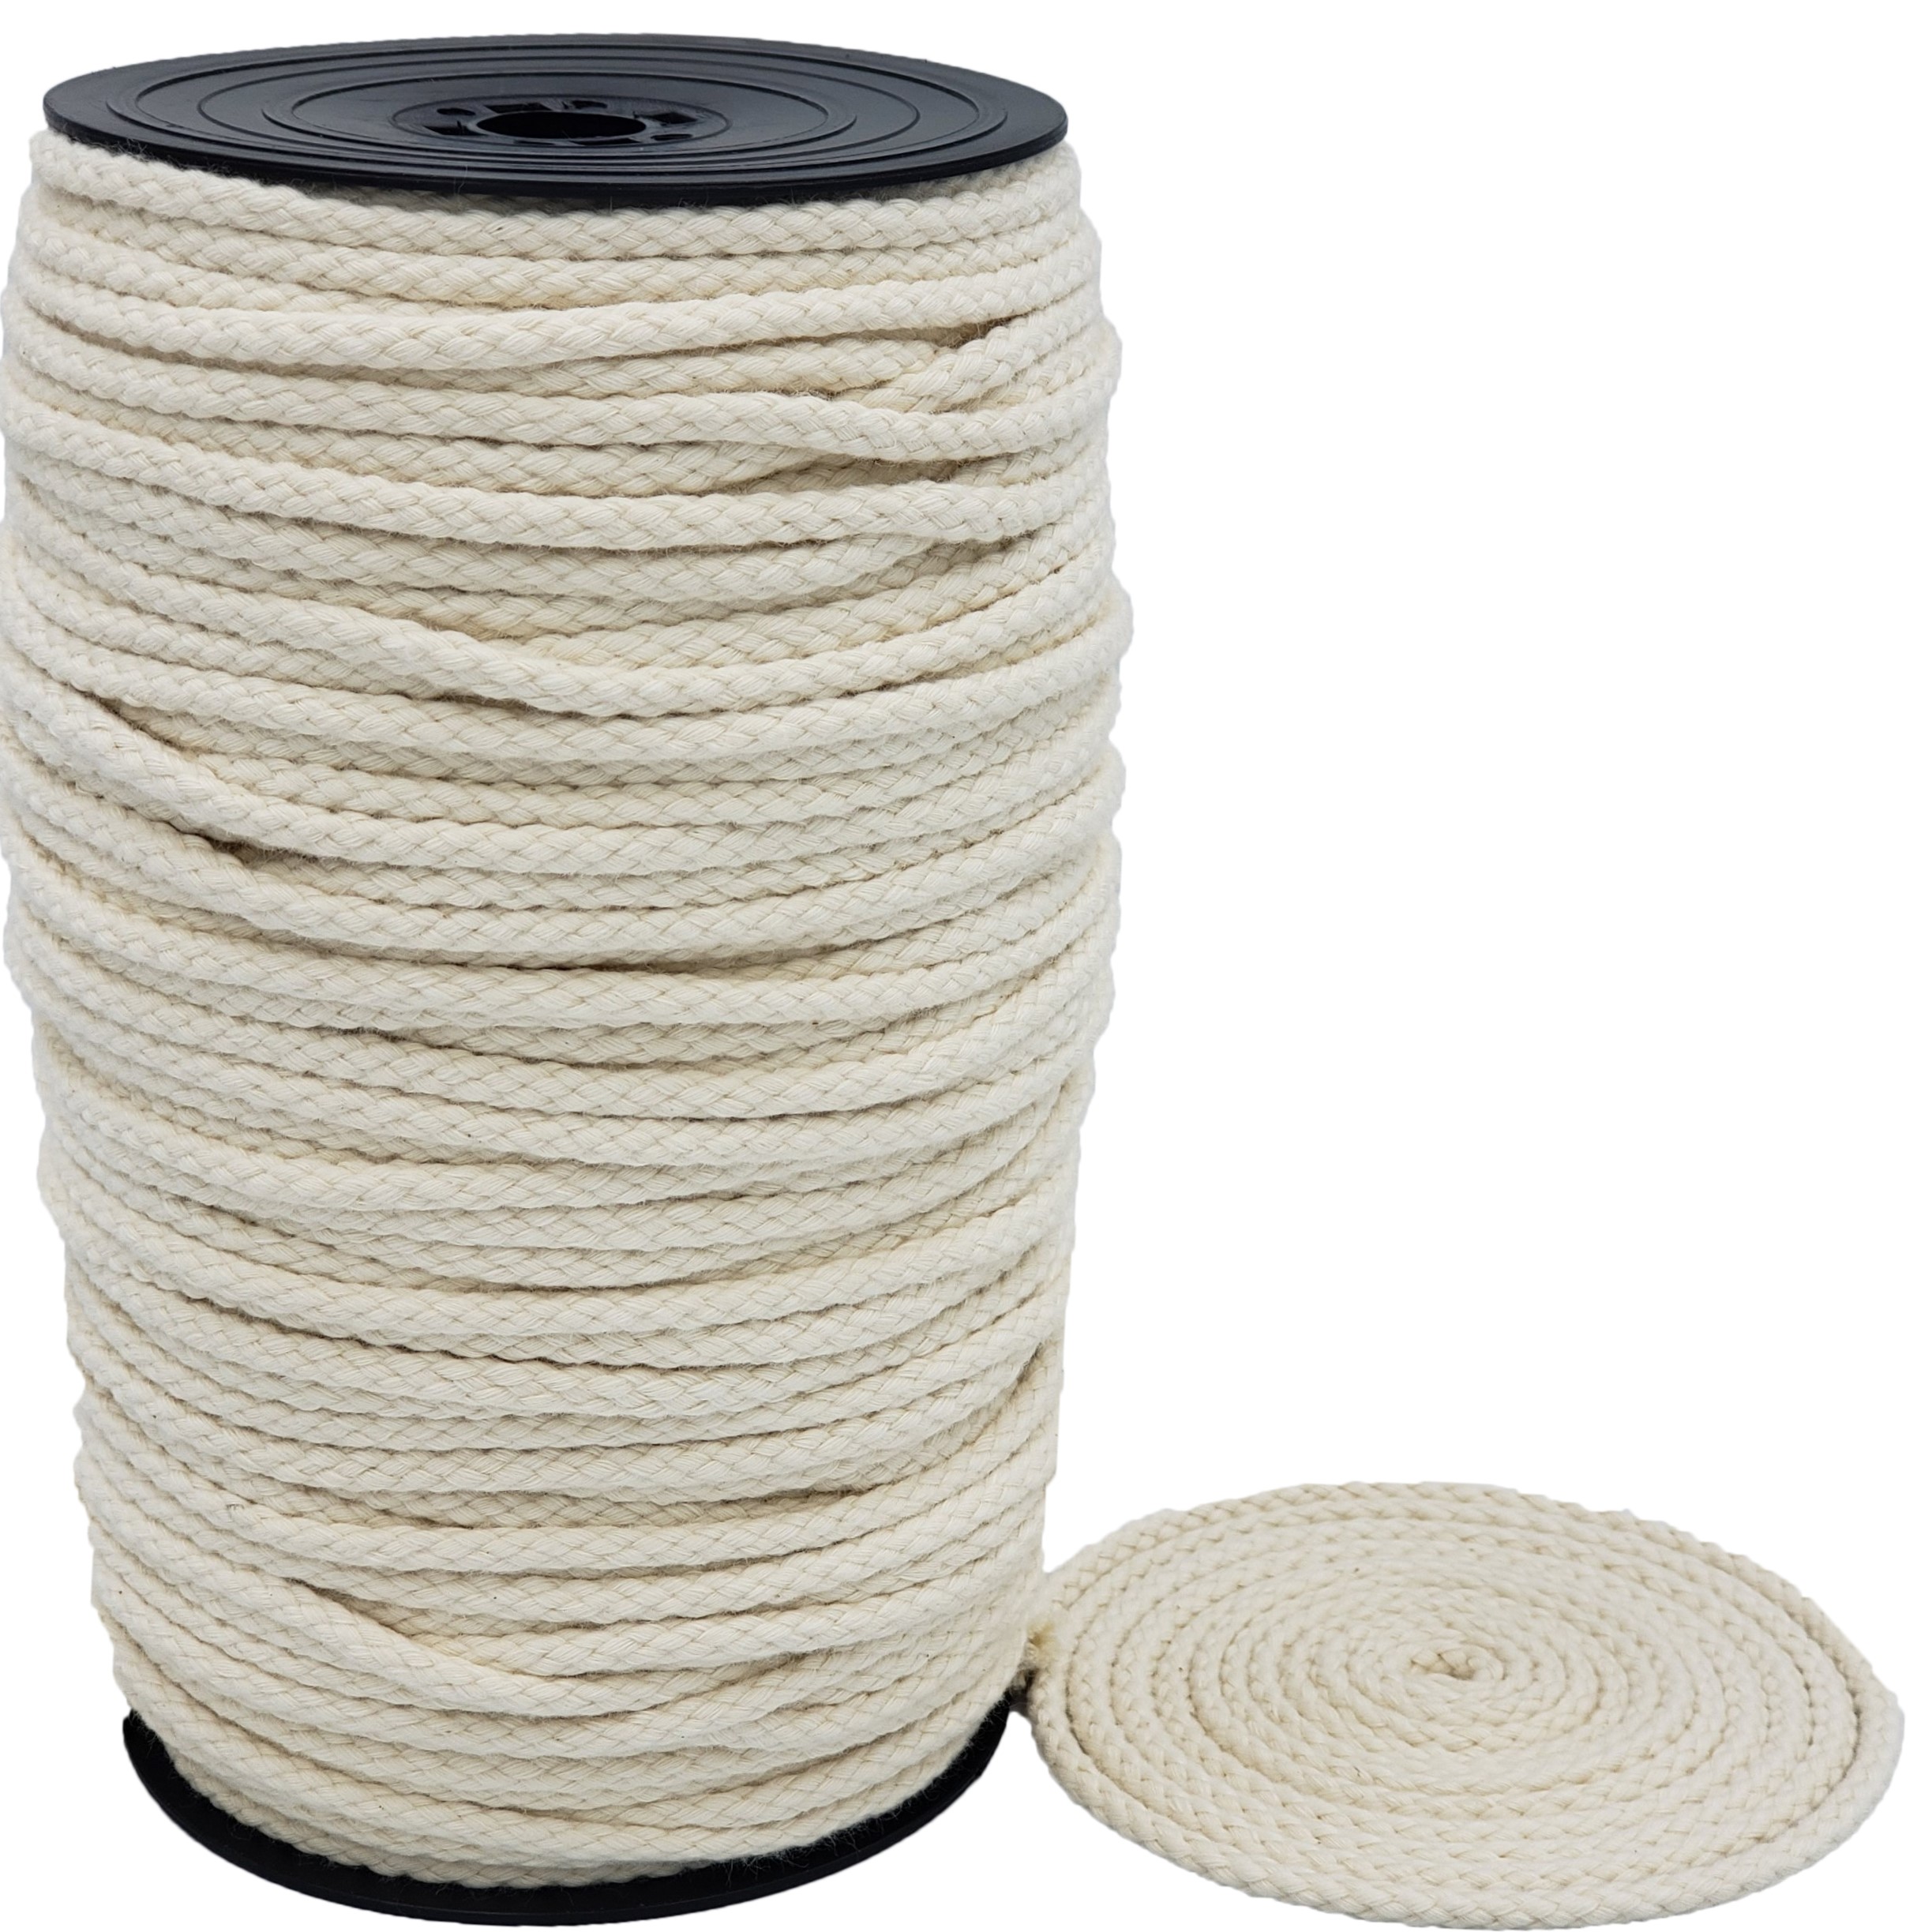 Dây Macrame ,dây dệt, dây Mắc na , 100% cotton tự nhiên để làm sản phẩm treo tường, Móc treo cây, Thủ công, Đan, Dự án trang trí, Dây cotton mềm